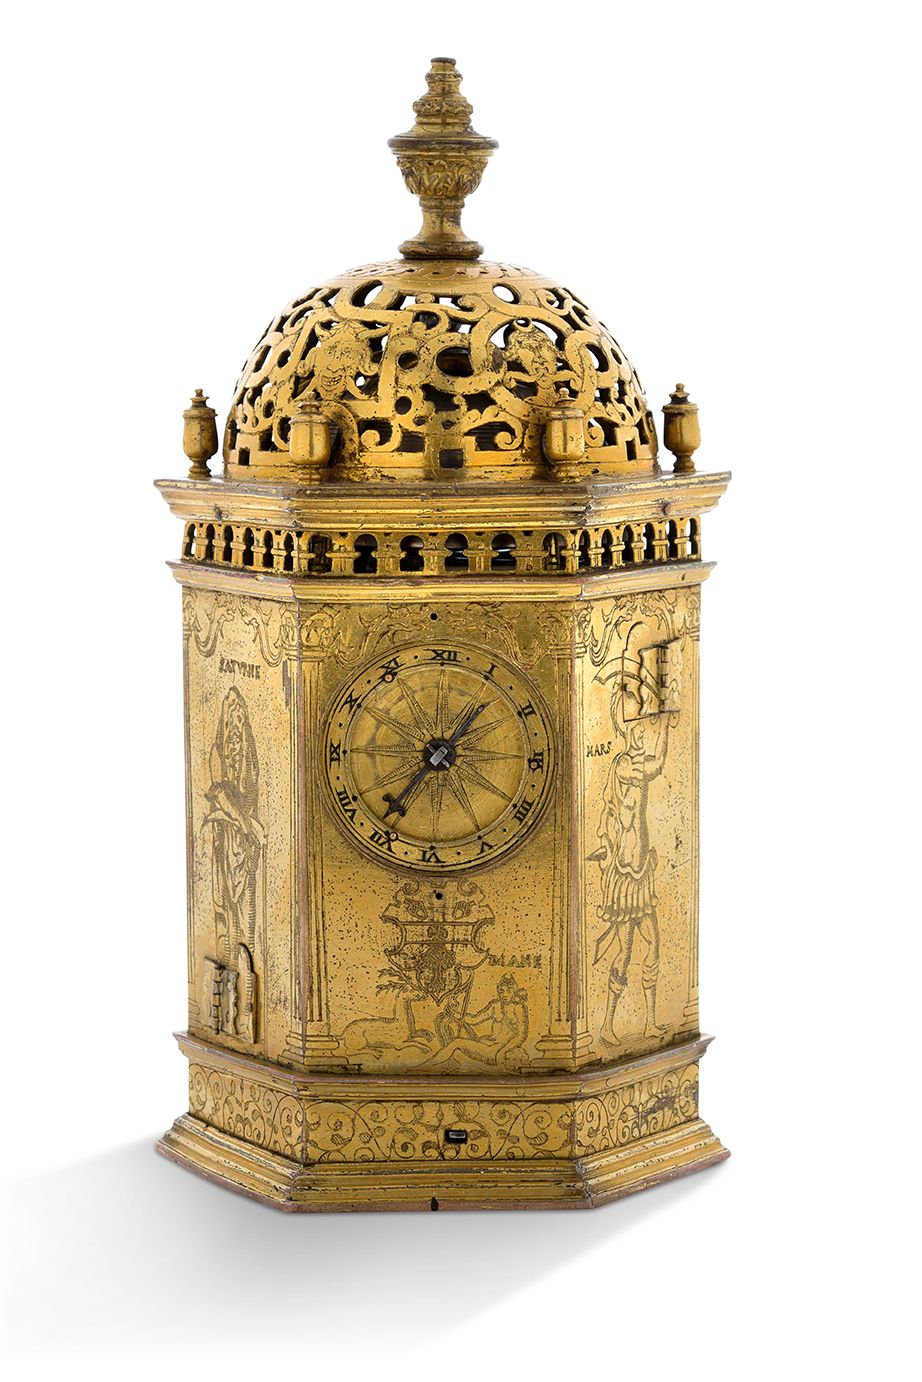 P. PLANTARD, Abbeville 
Reloj de mesa en forma de torre

En cobre dorado, forma &hellip;